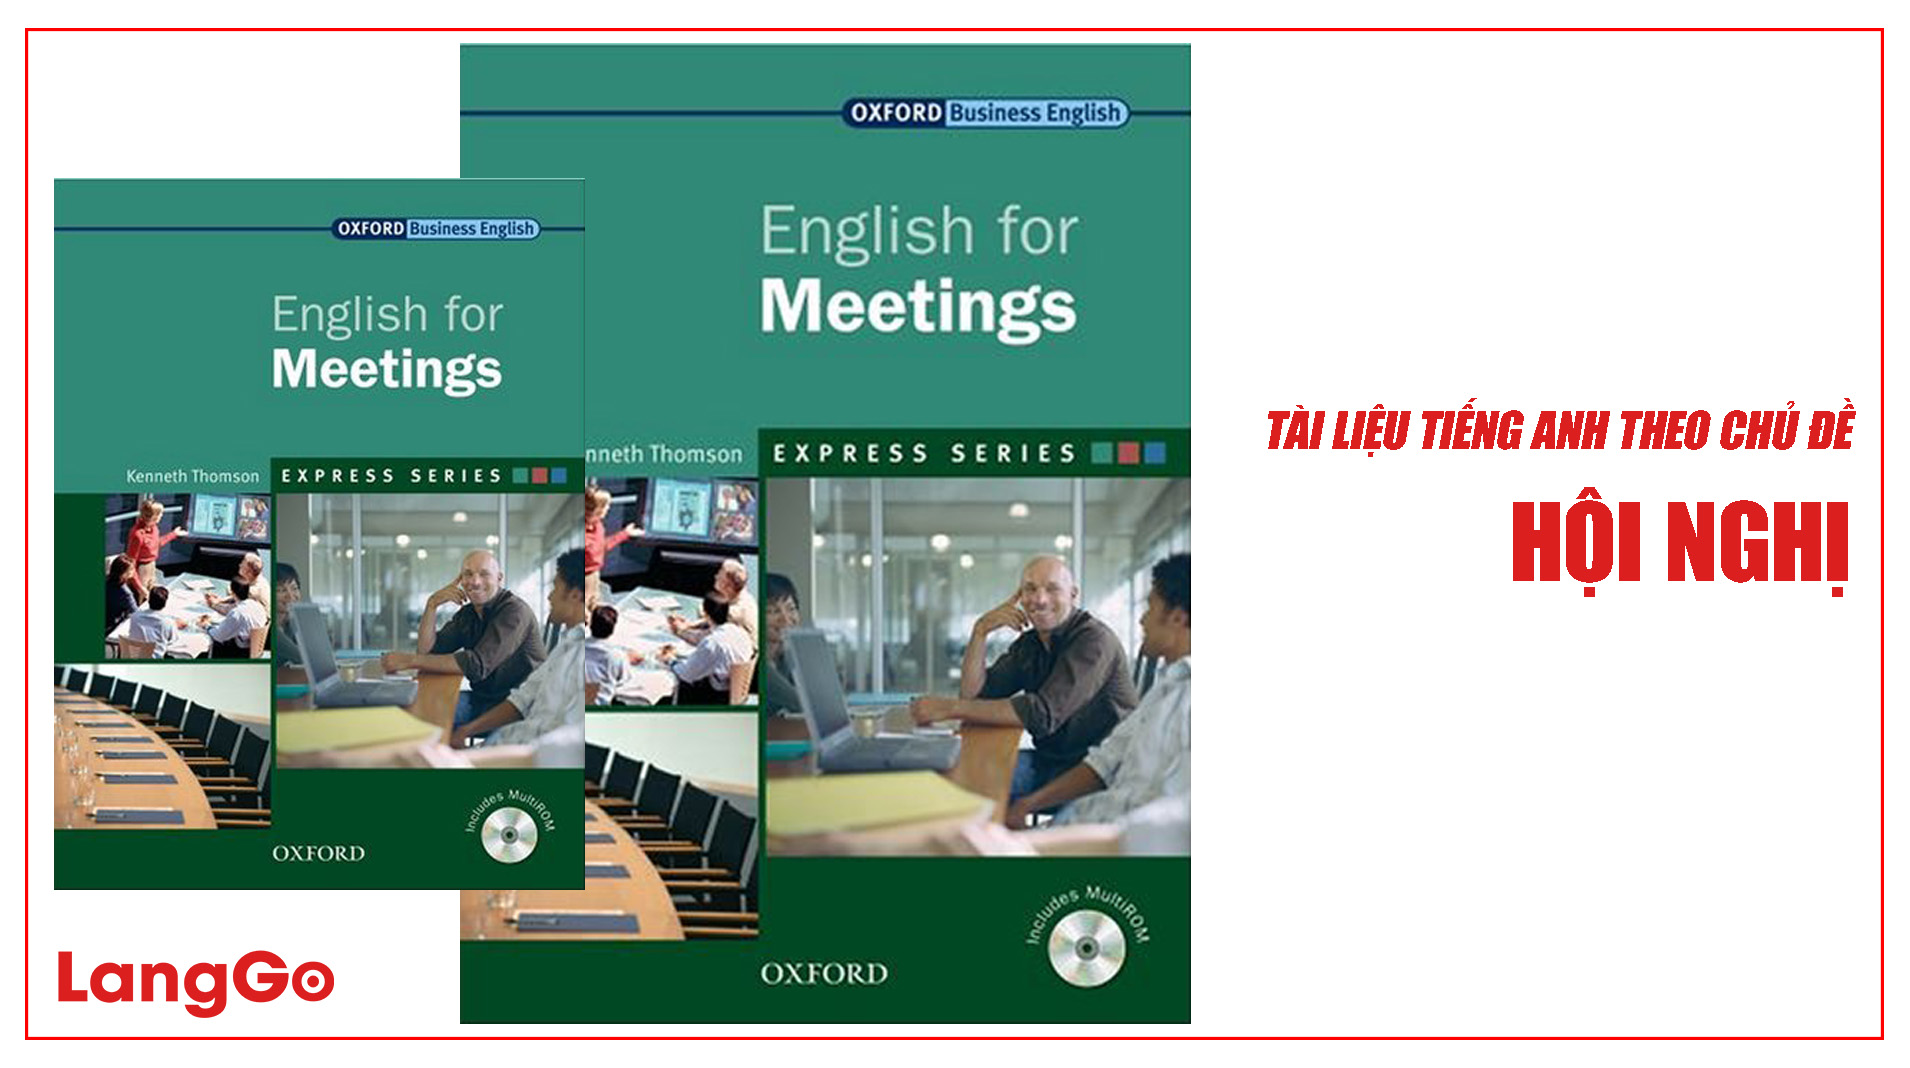 LangGo - Tài liệu tiếng Anh trong hội nghị chuyên nghiệp - English for Meetings